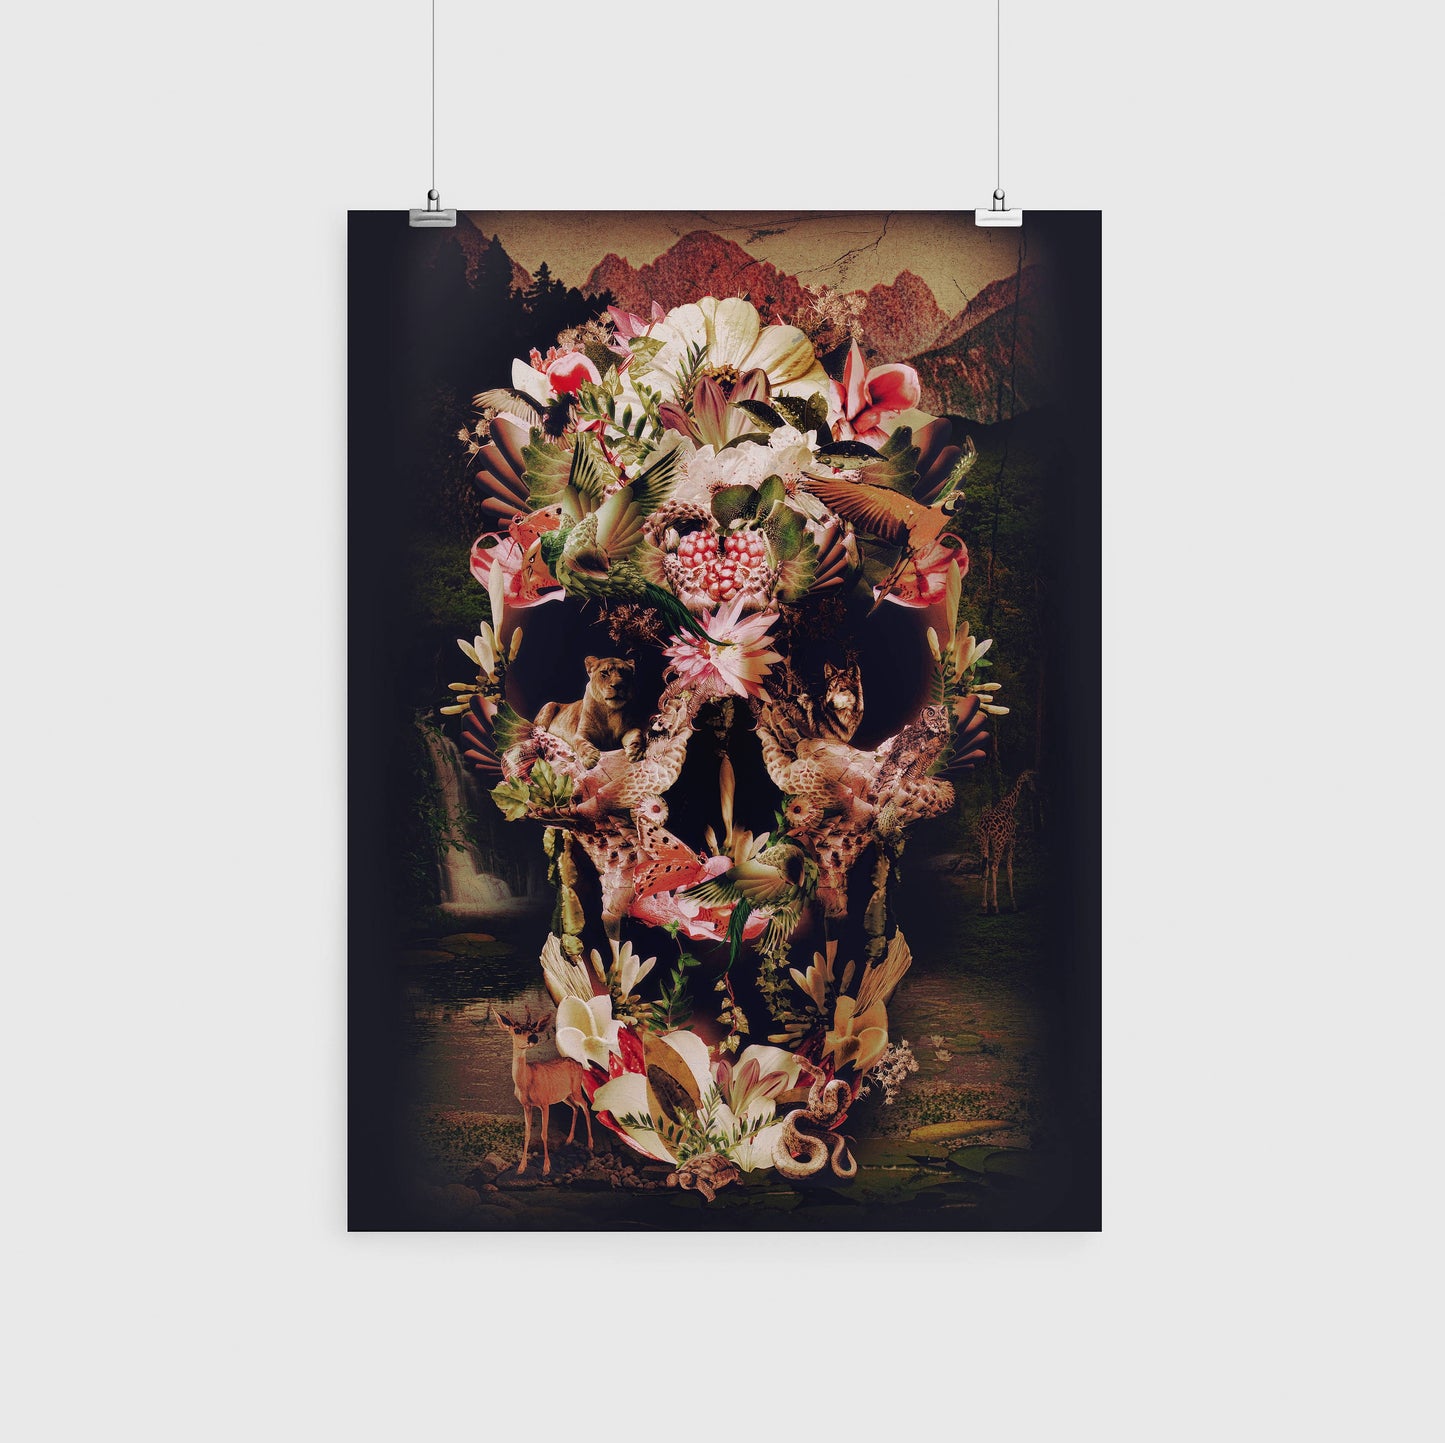 Flower Skull Prints, Set Of 3 Skull Home Decor, Nature Skull Poster Set, Sugar Skull Wall Art Gift, Dark Gothic Floral Skull Art Print Decor